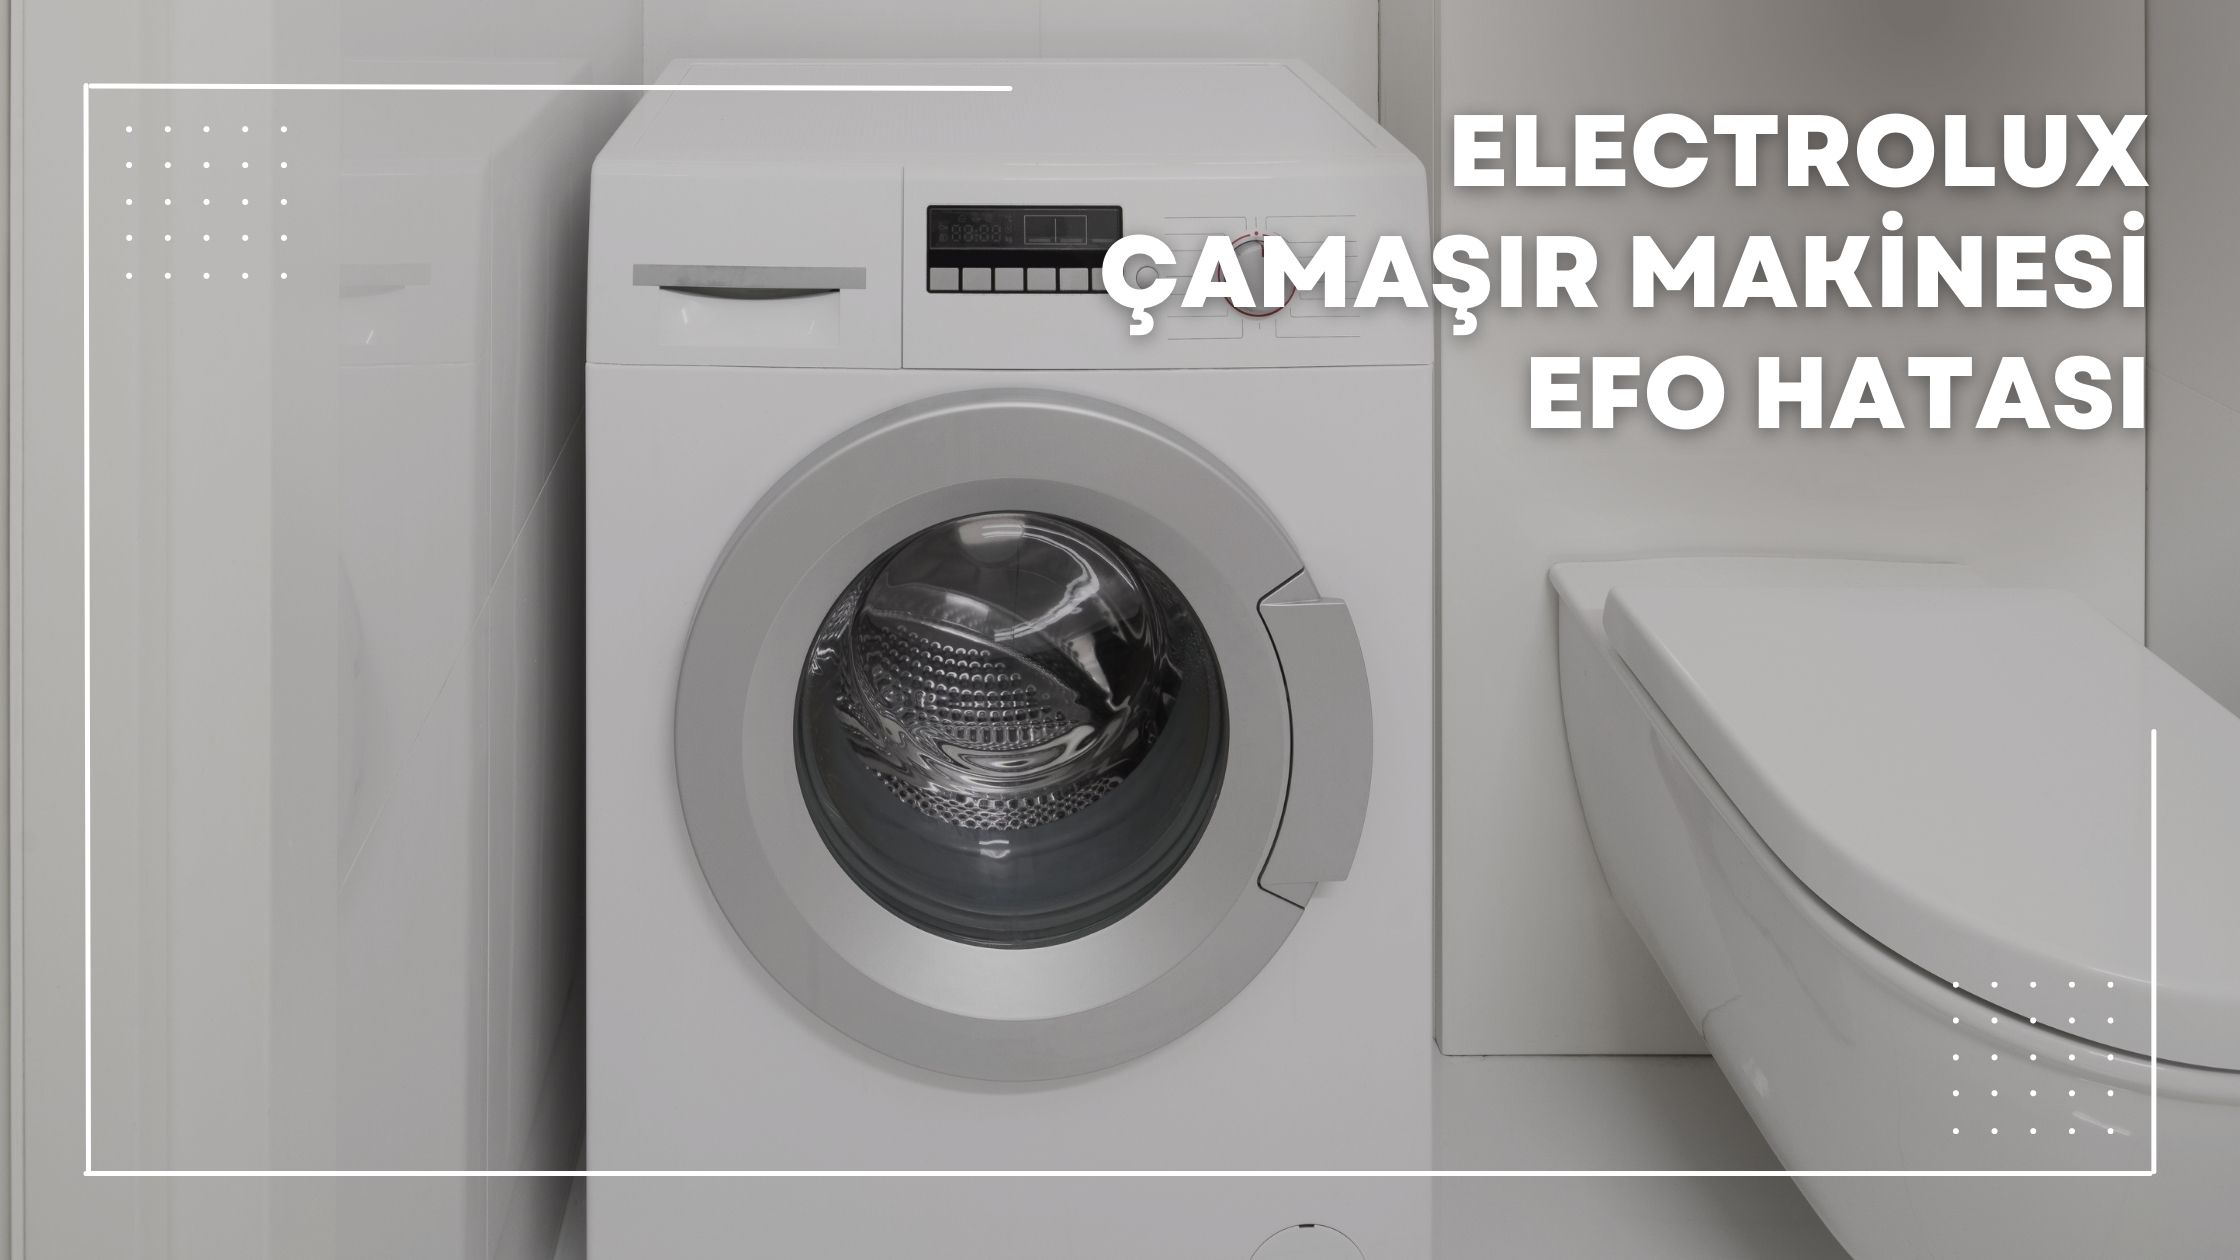 Electrolux Çamaşır Makinesi EFo Hatası